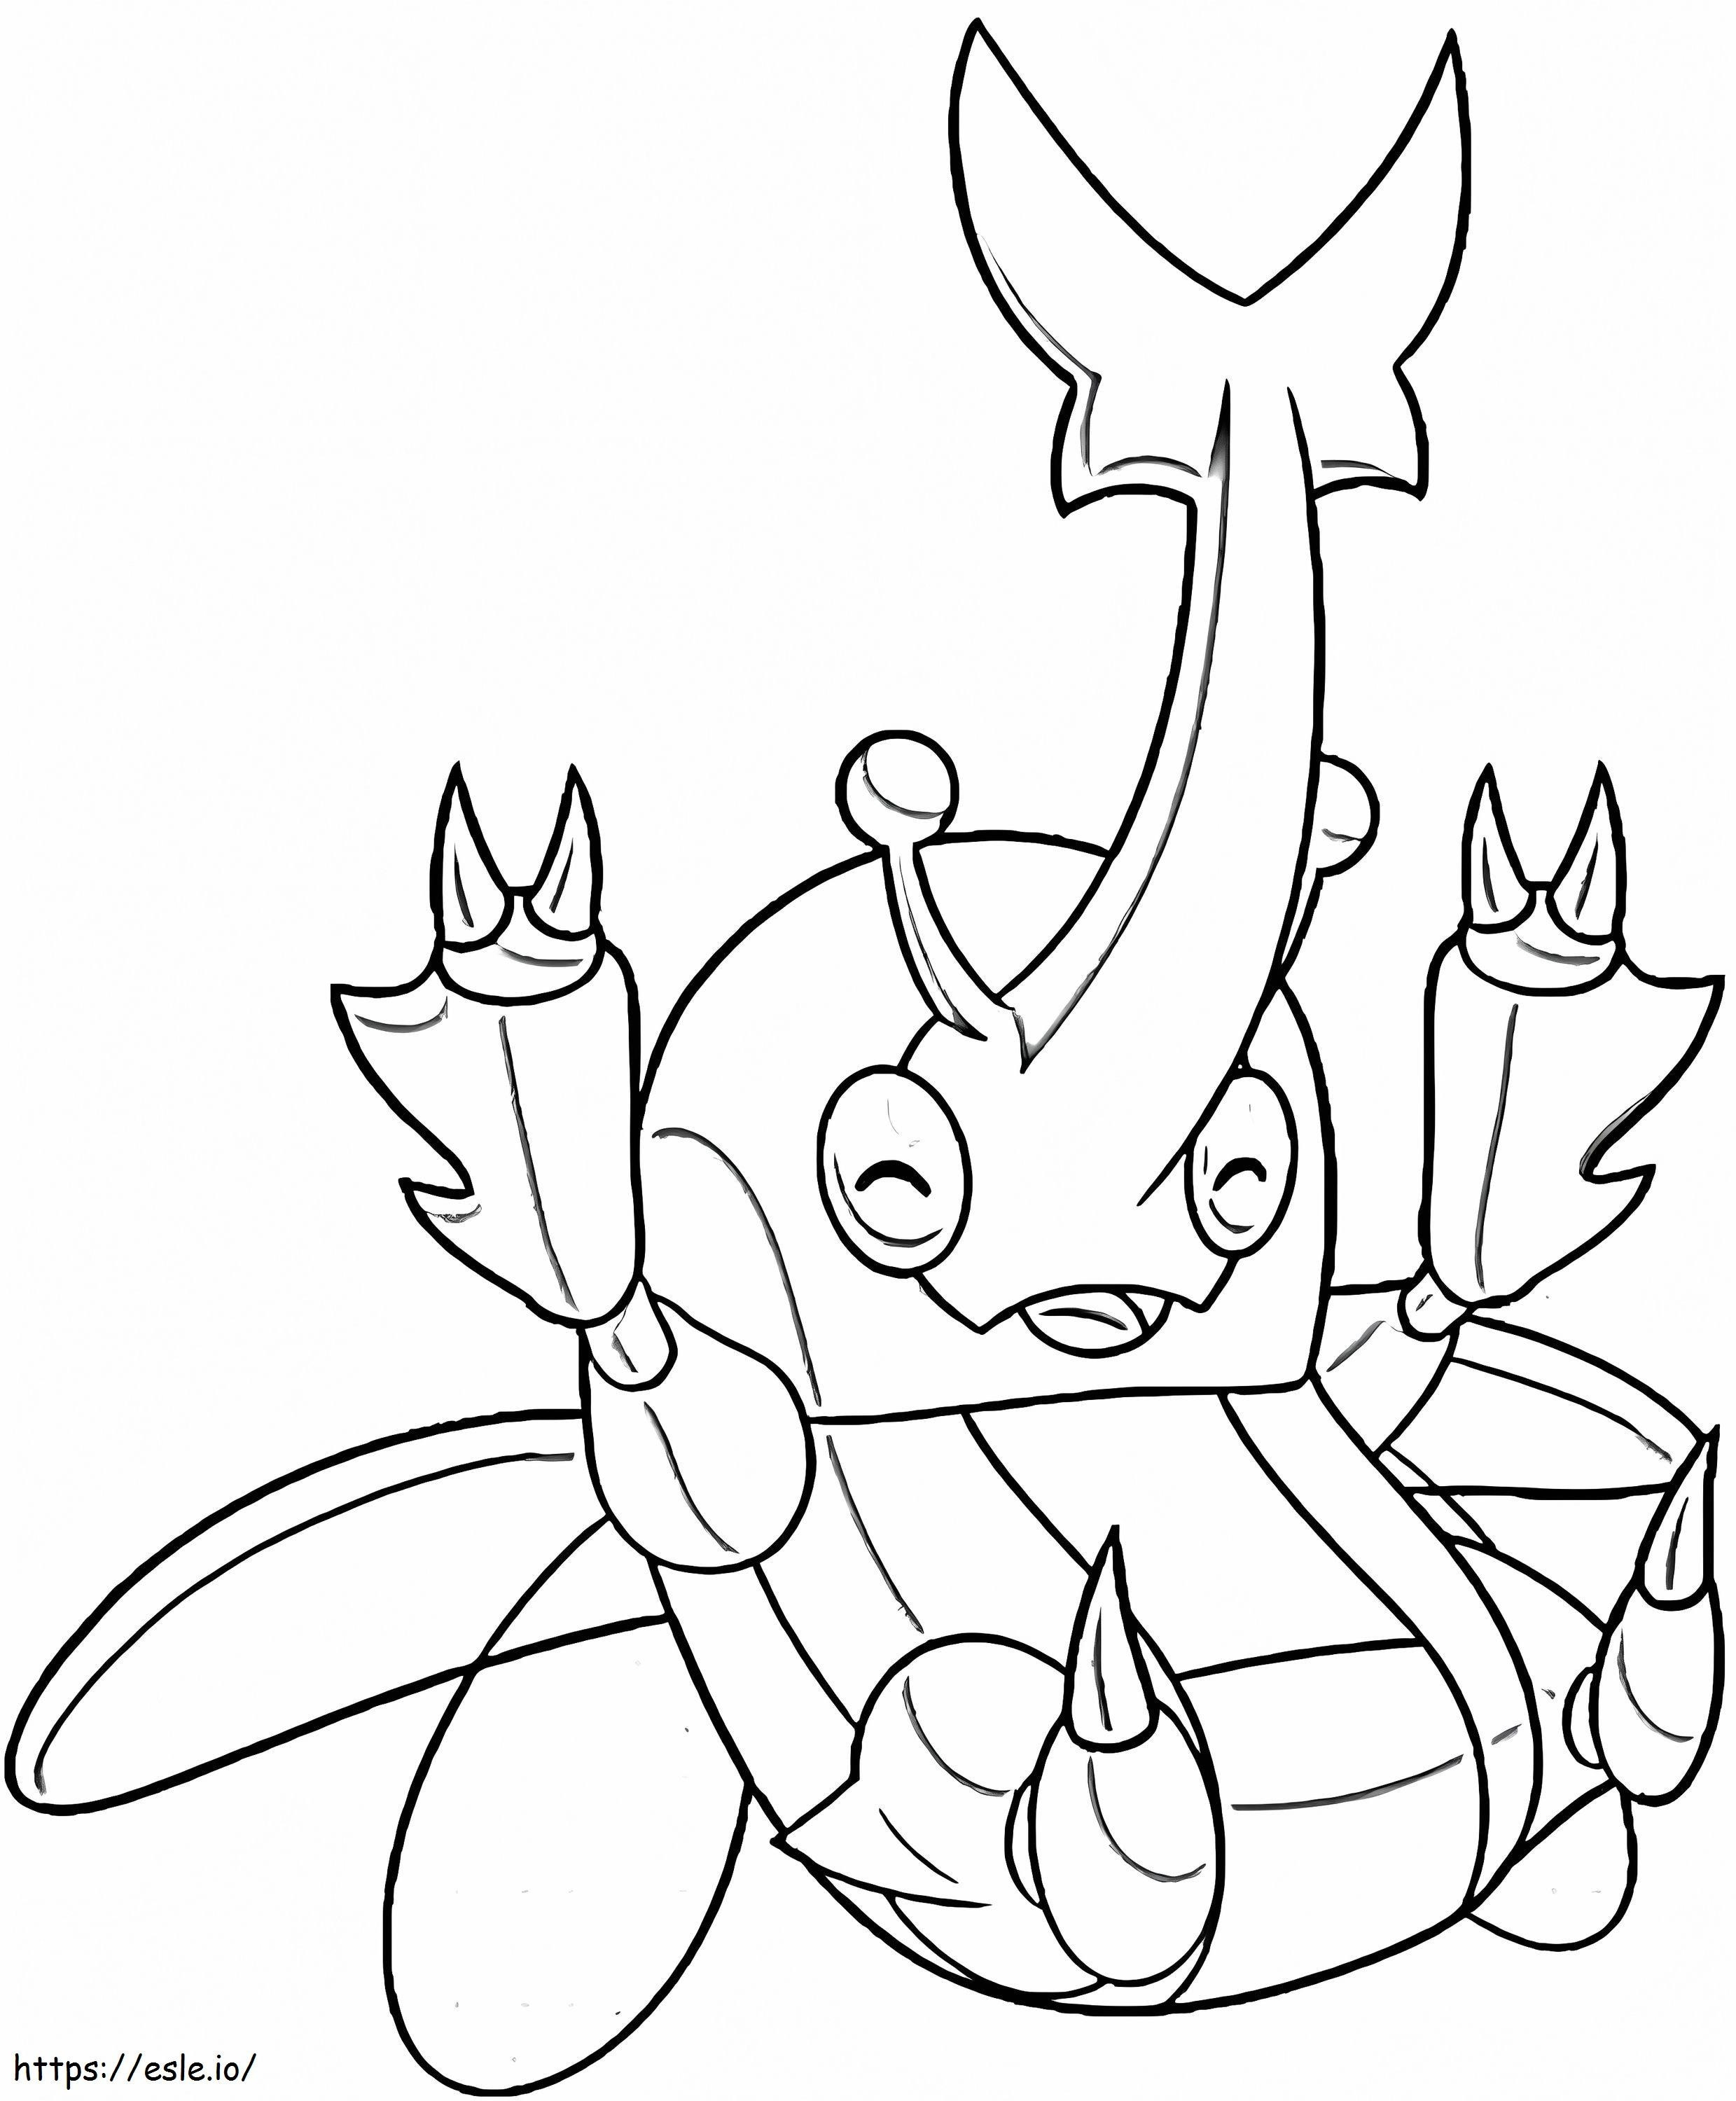 Coloriage Adorable Pokémon Heracross à imprimer dessin